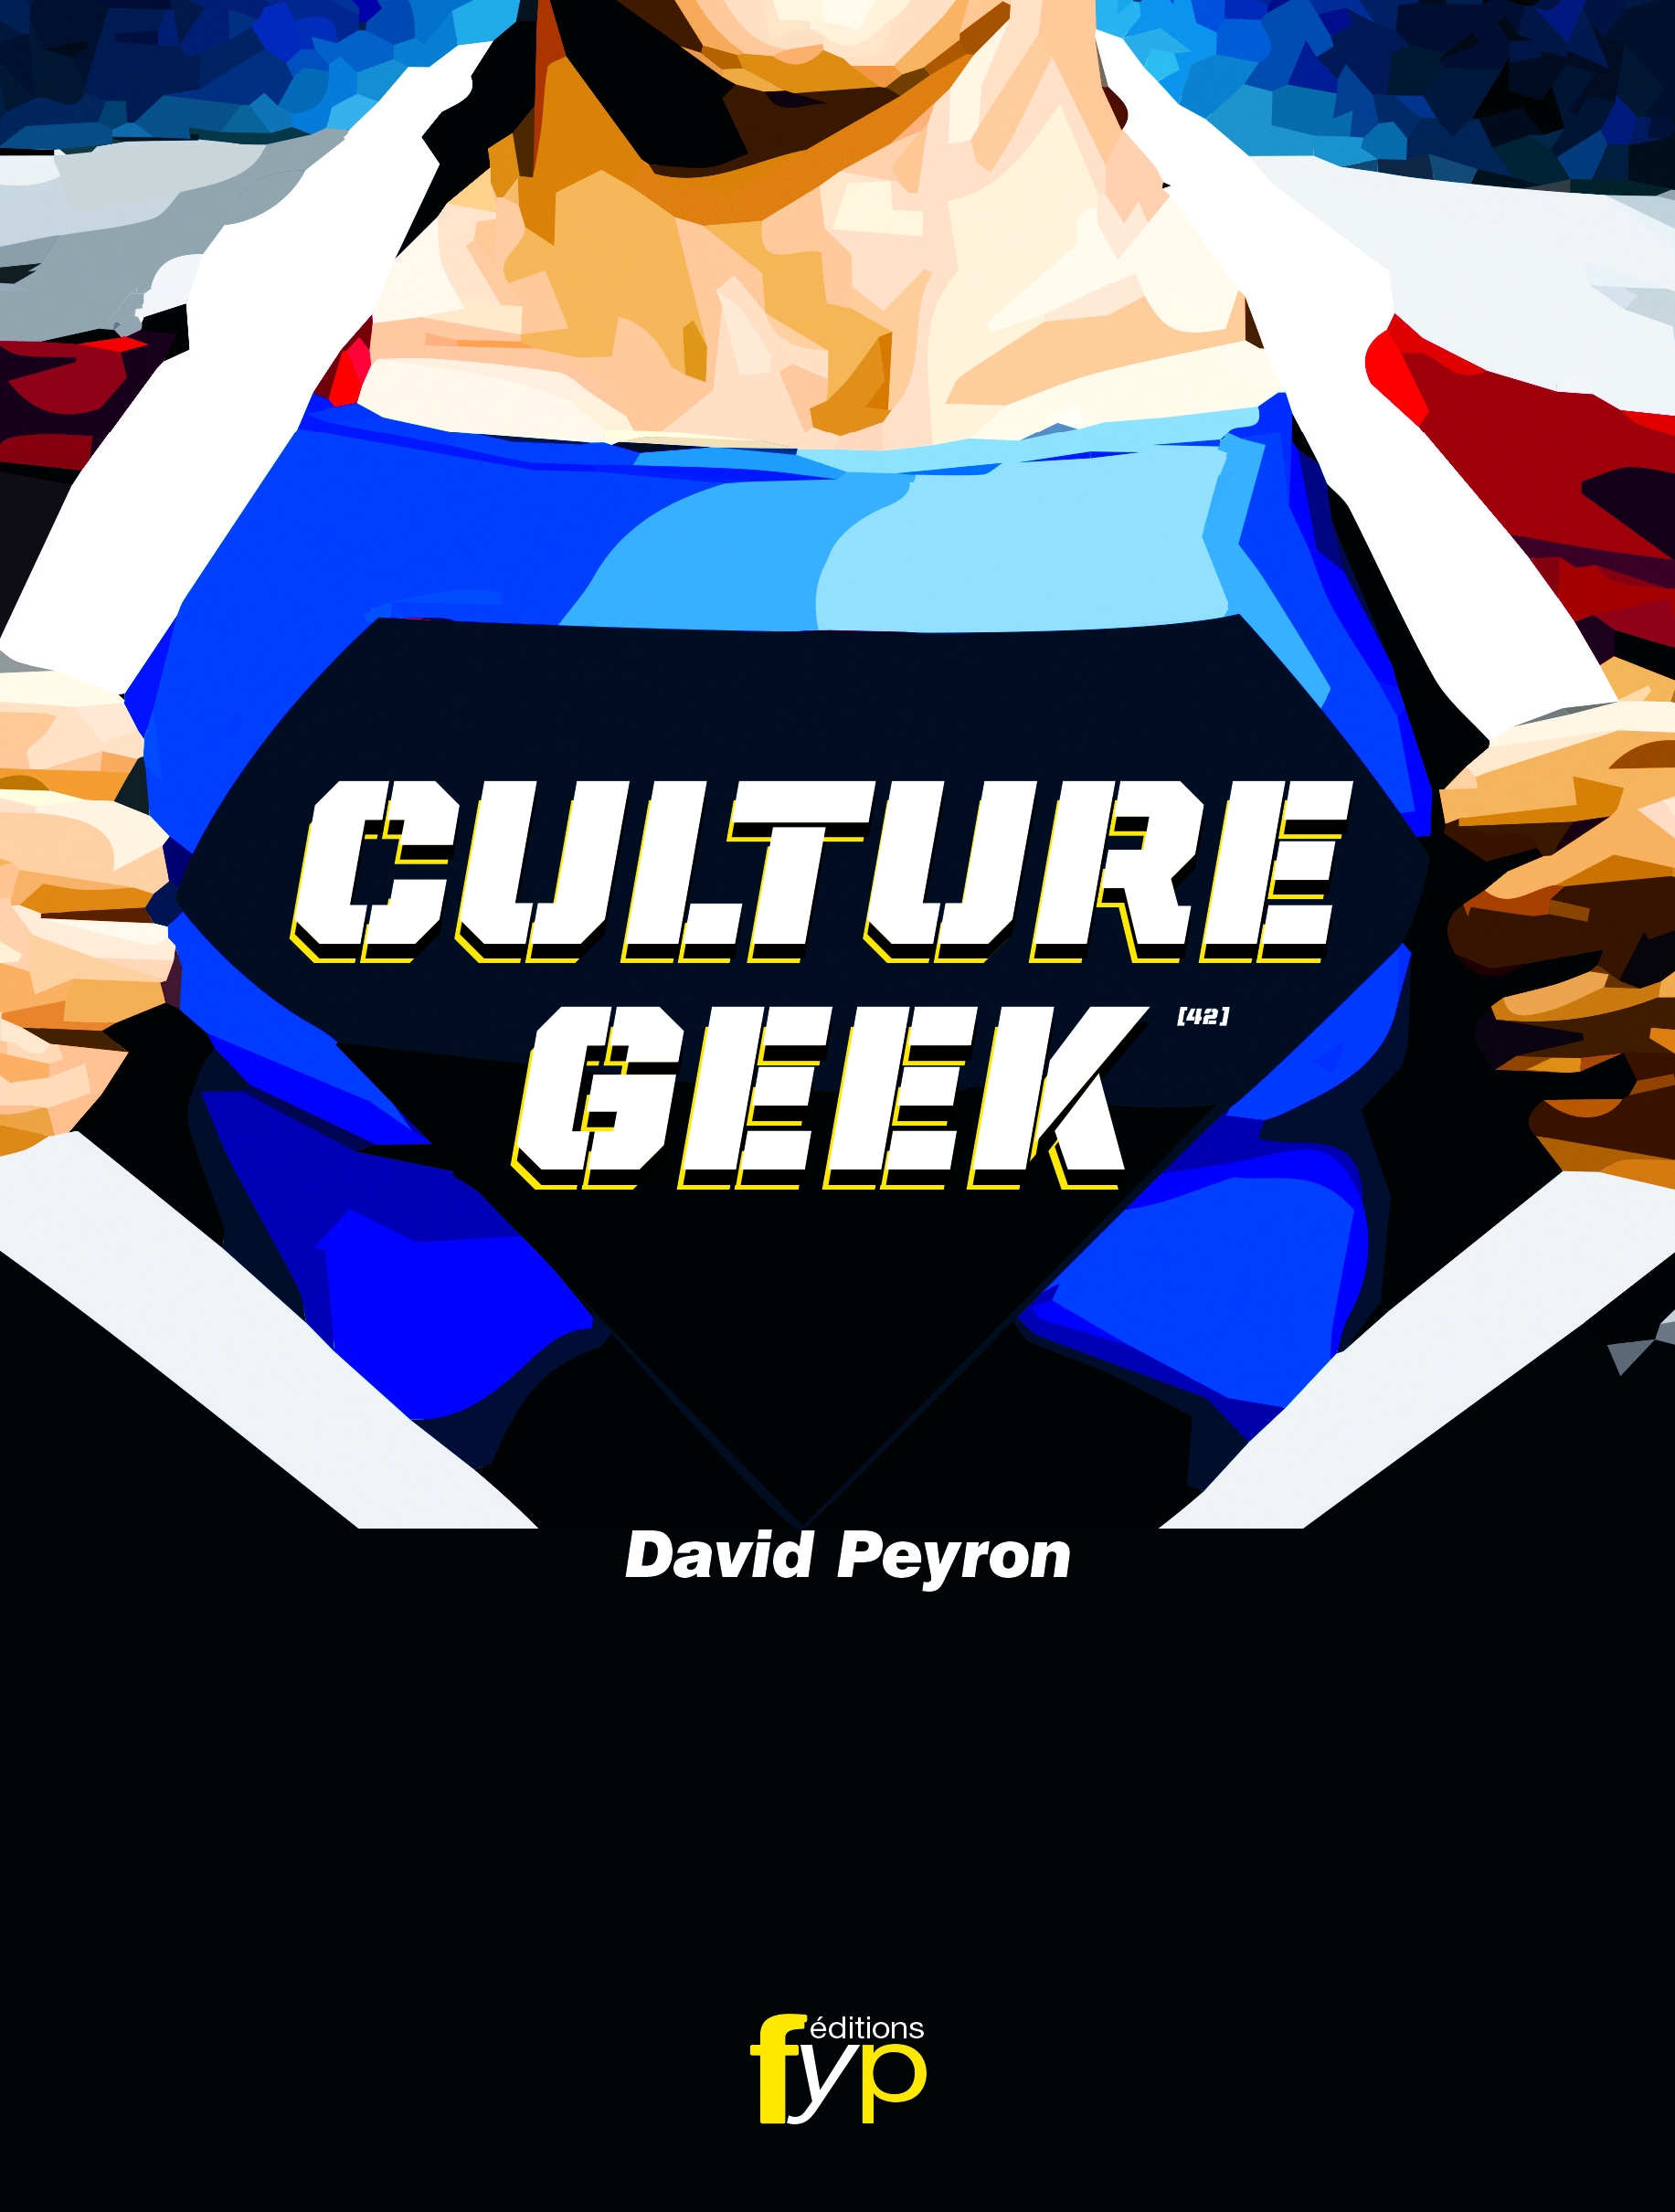 Couverture du livre Culture geek de David Peyron